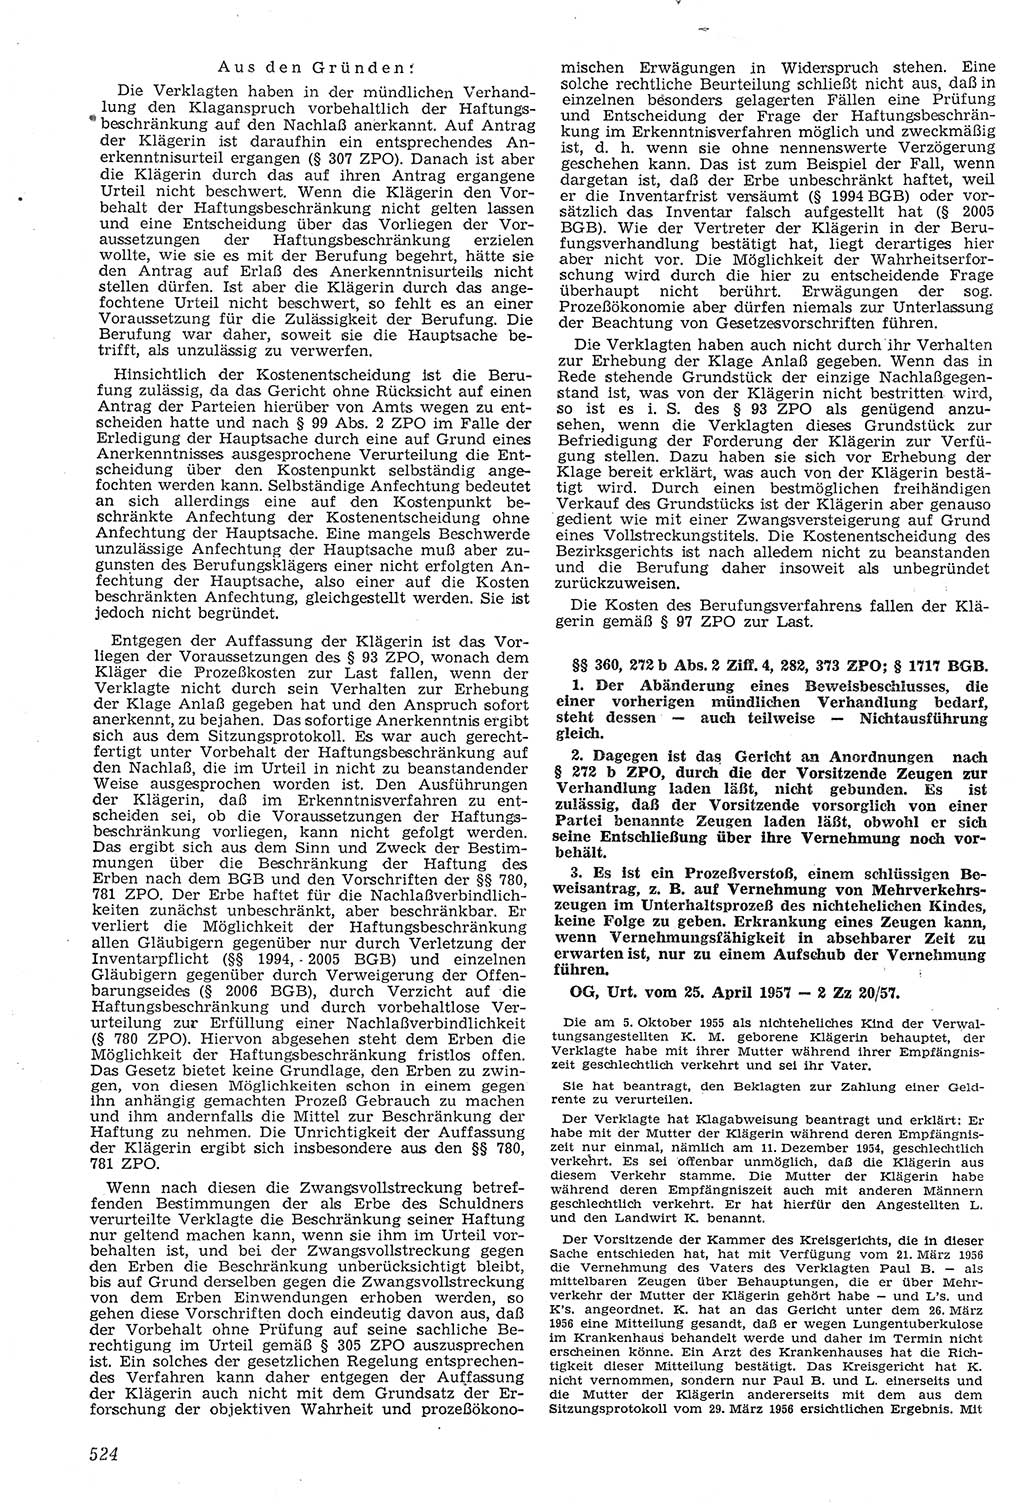 Neue Justiz (NJ), Zeitschrift für Recht und Rechtswissenschaft [Deutsche Demokratische Republik (DDR)], 11. Jahrgang 1957, Seite 524 (NJ DDR 1957, S. 524)